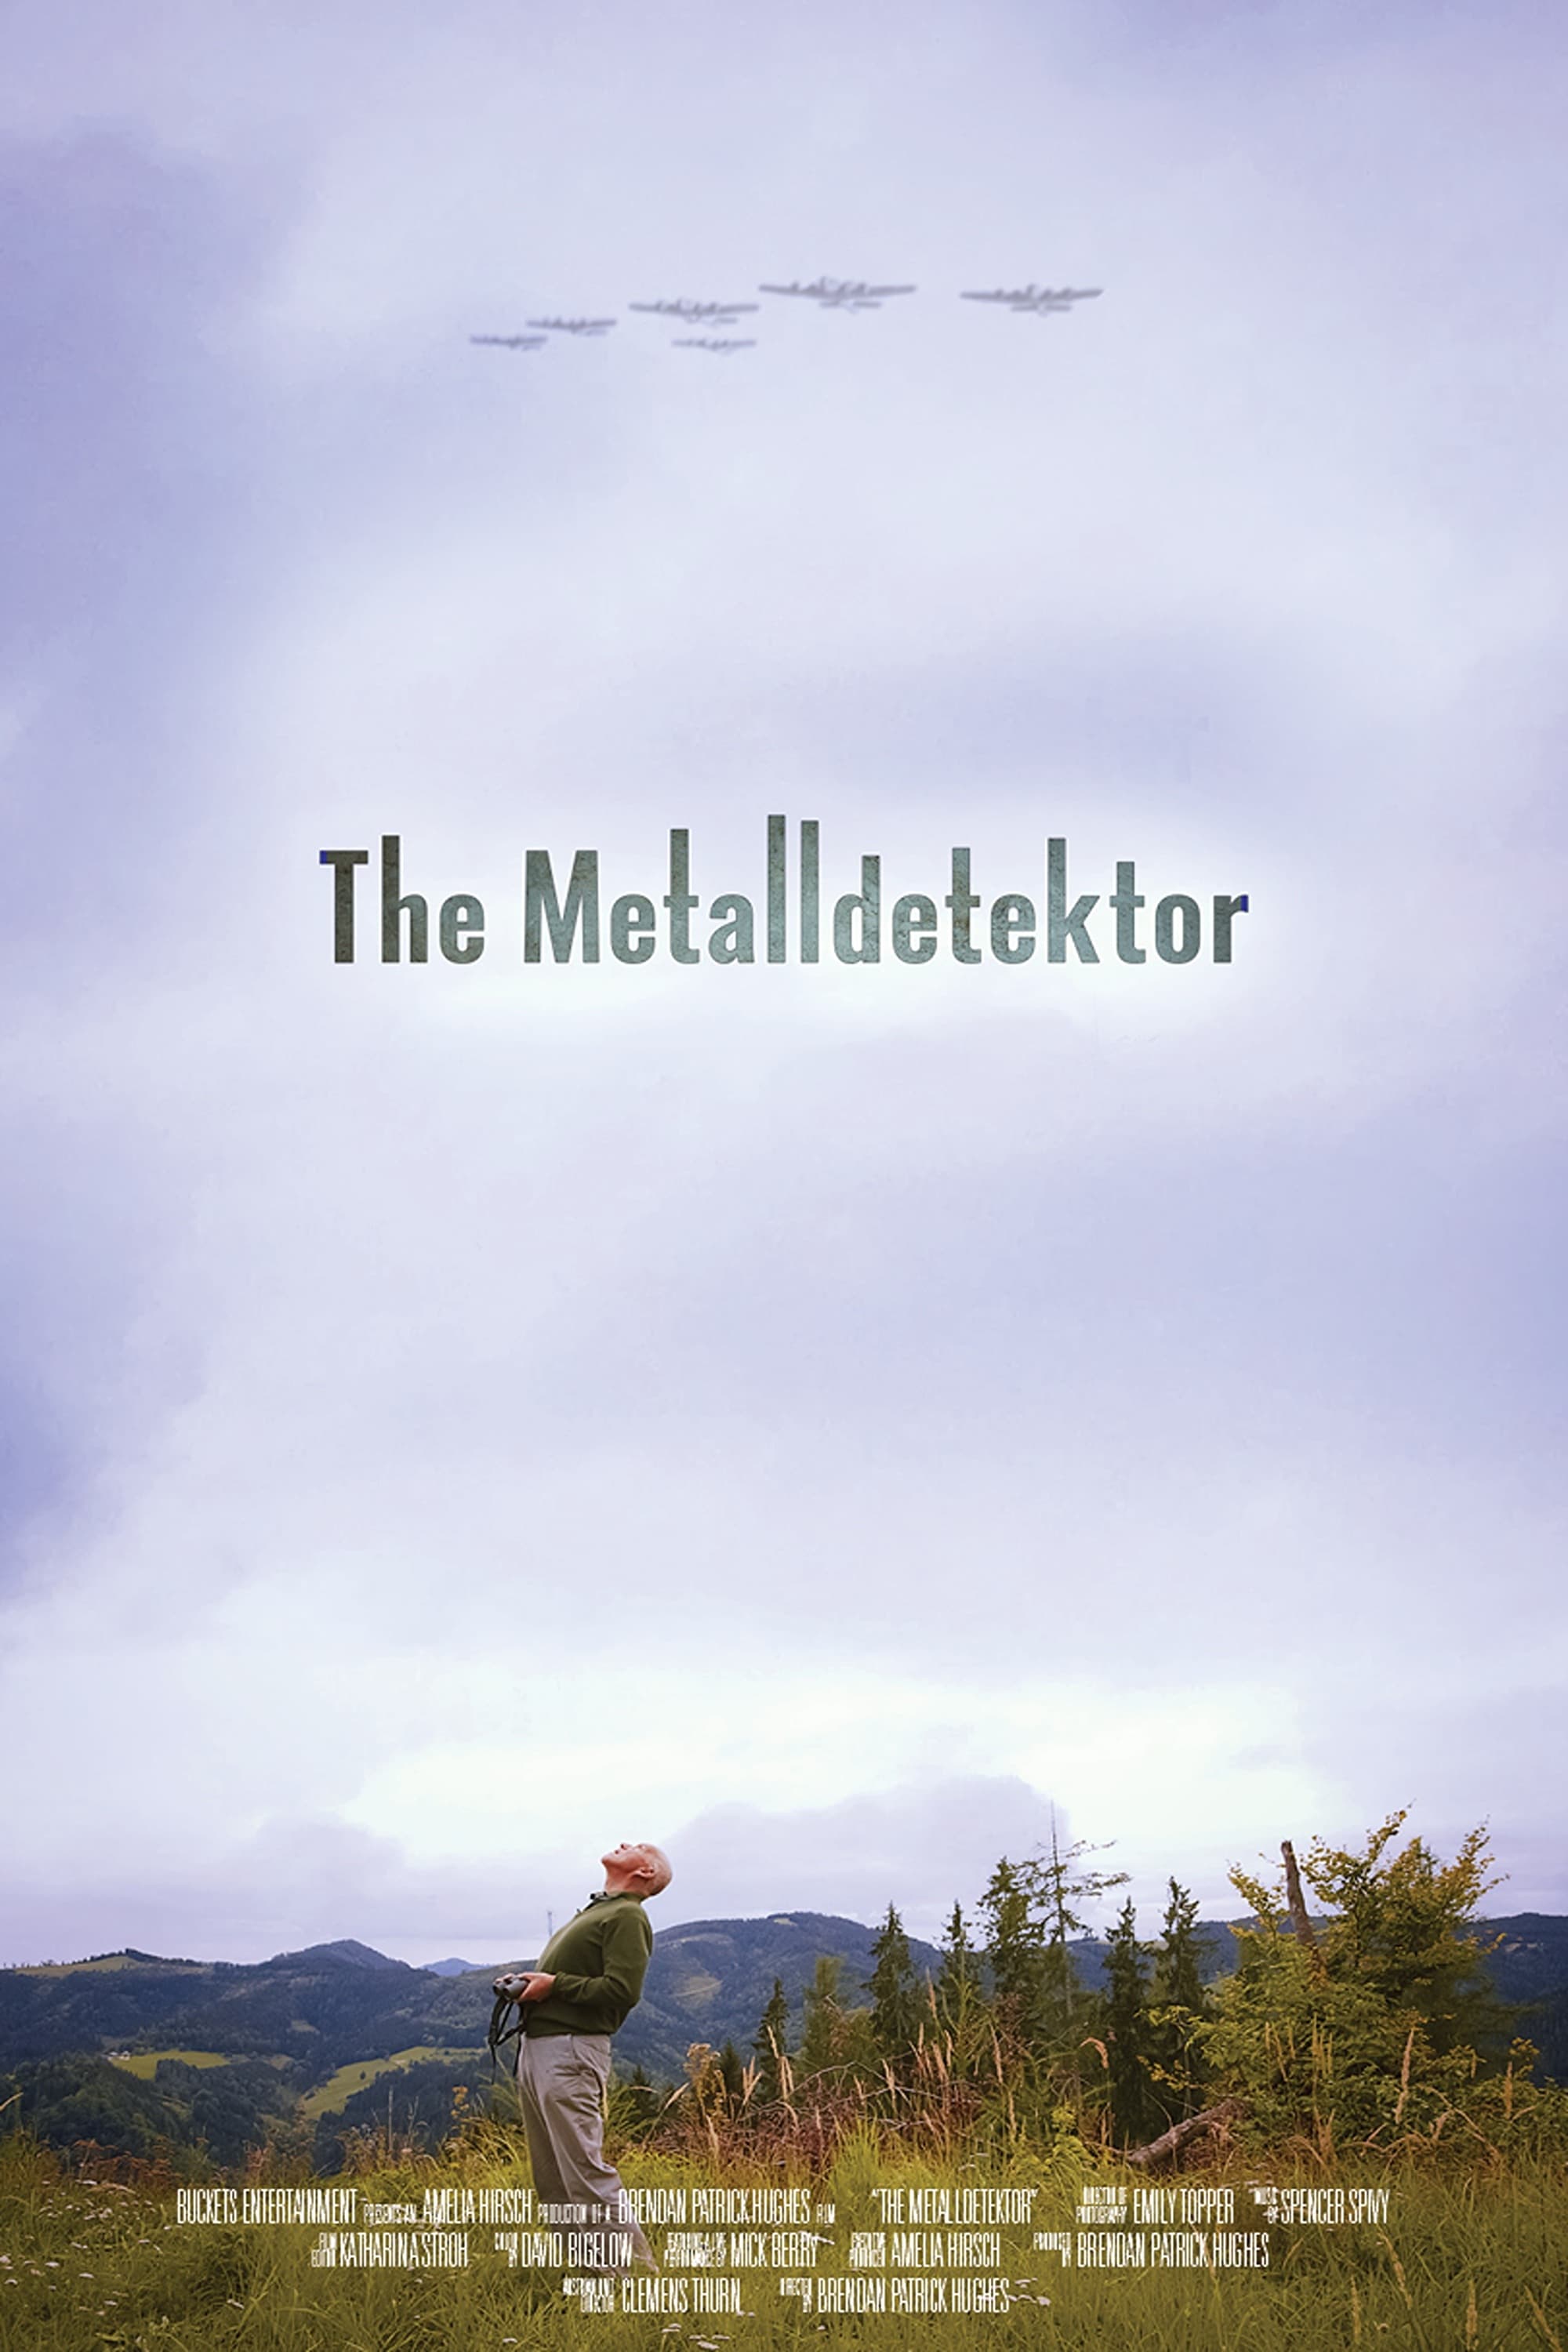 The Metal Detector